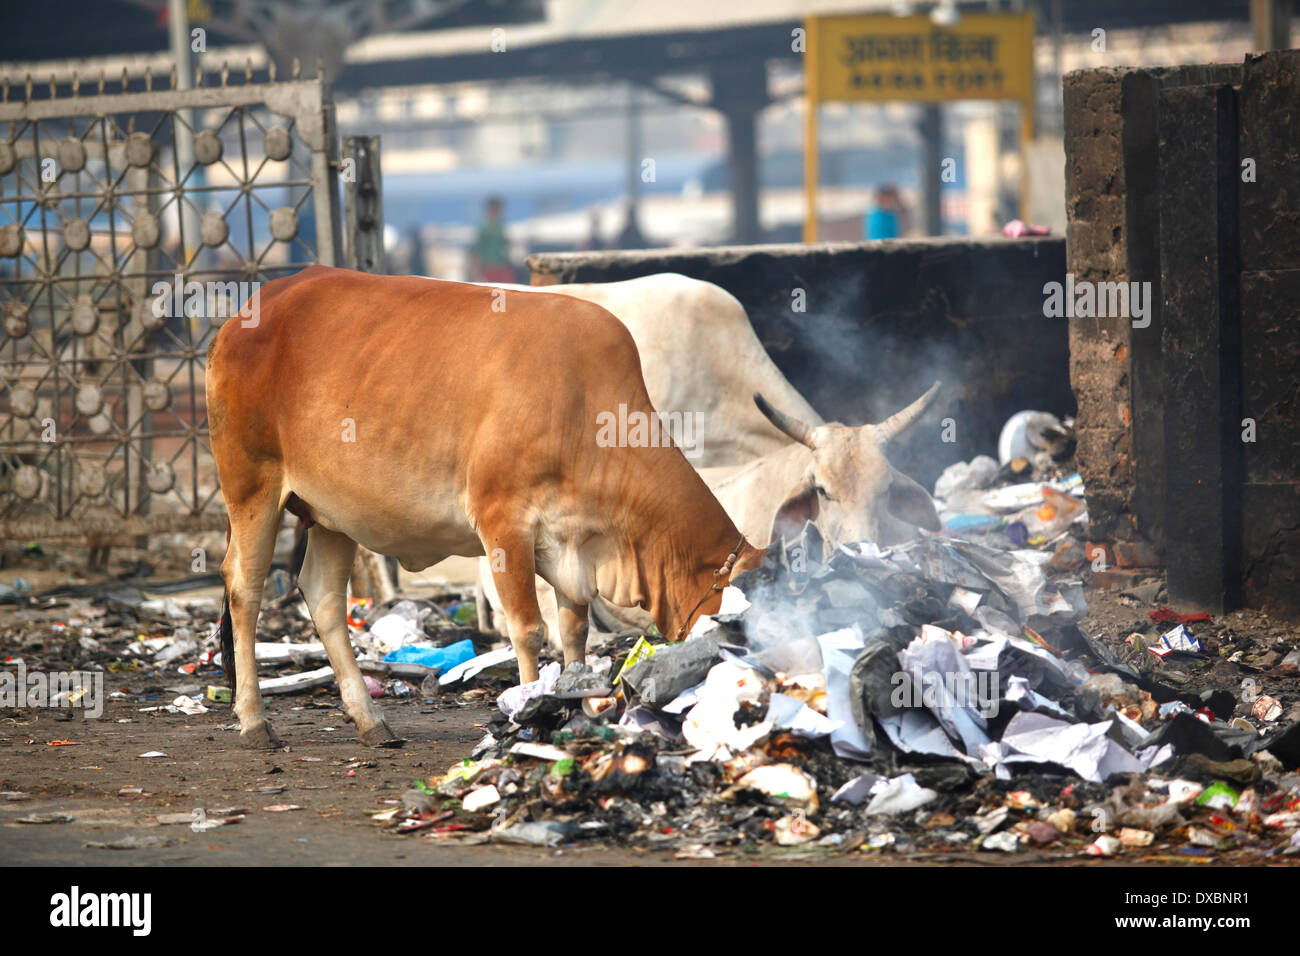 Deux vaches en fouillant dans les poubelles à la recherche de nourriture. Agra, Uttar Pradesh, Inde. Banque D'Images